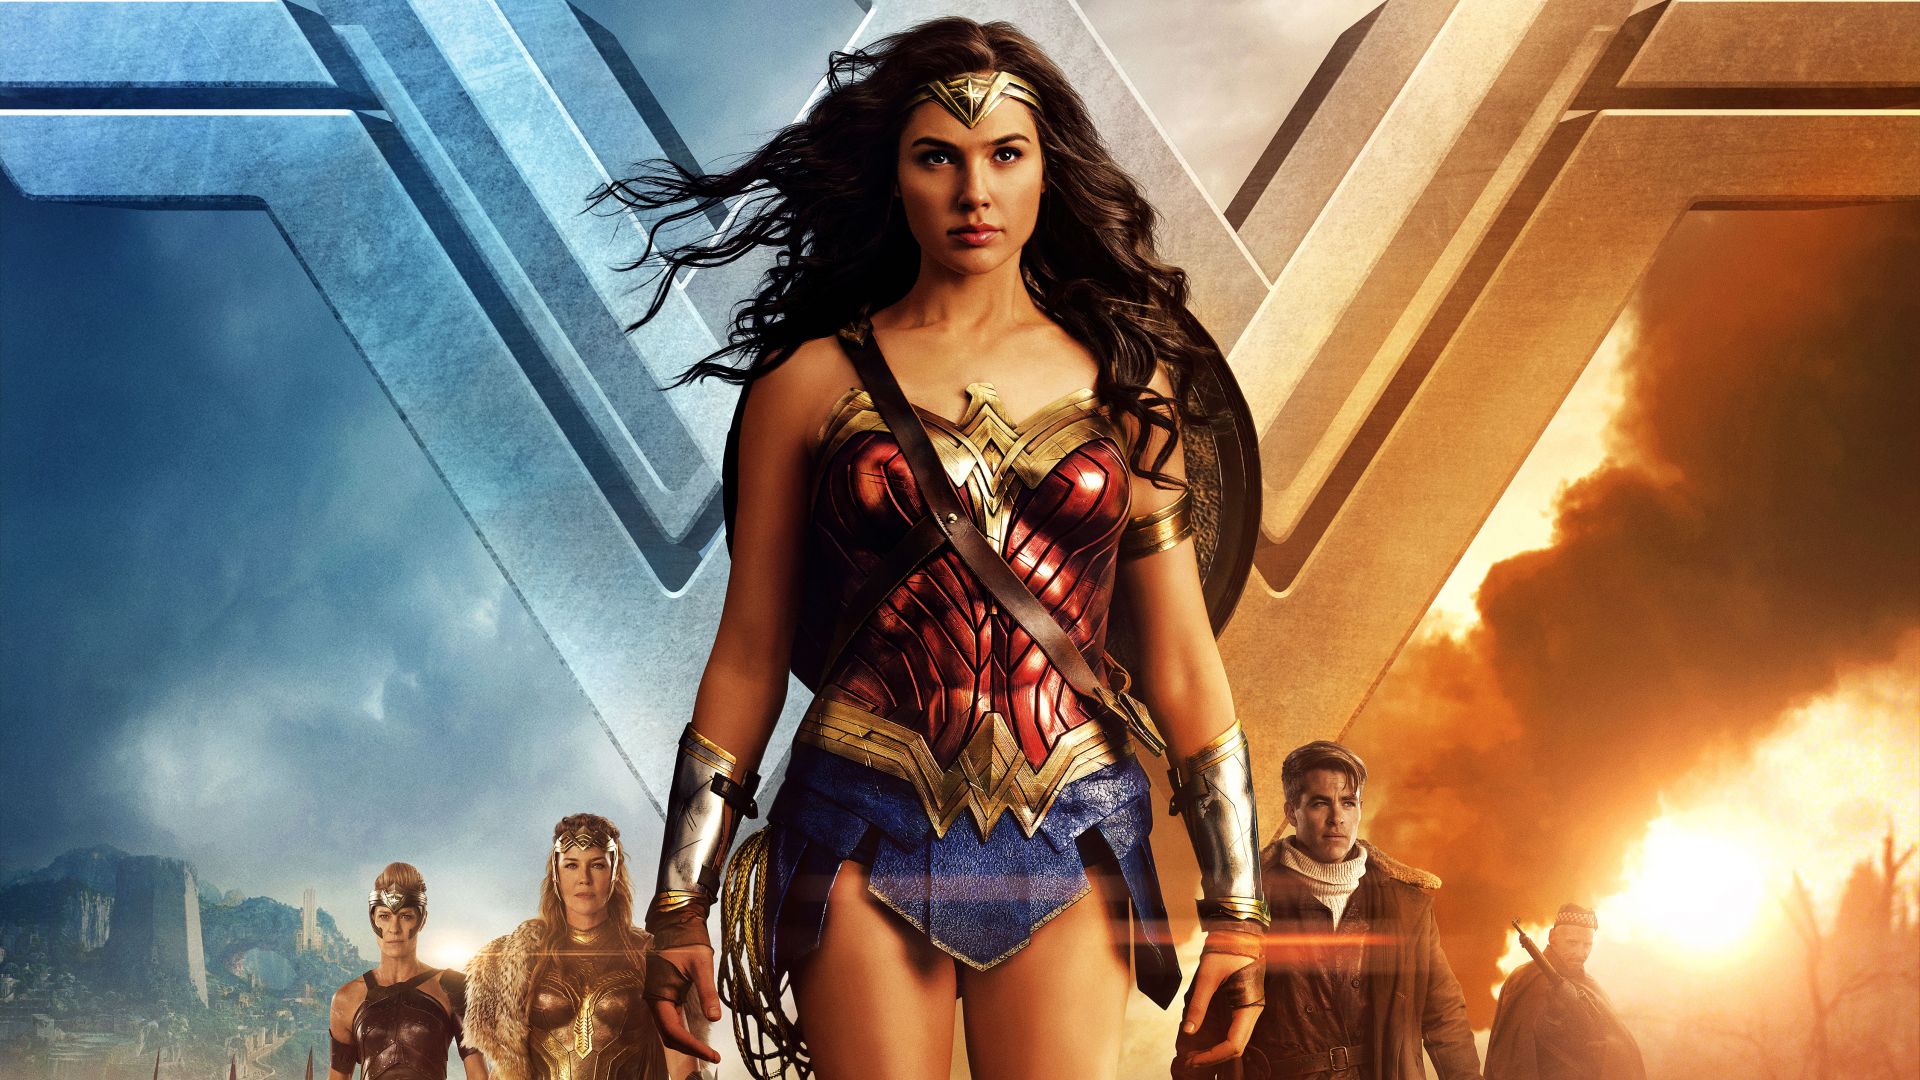 Wallpaper Wonder Woman by Gal Gadot, 2017 movie, 5k